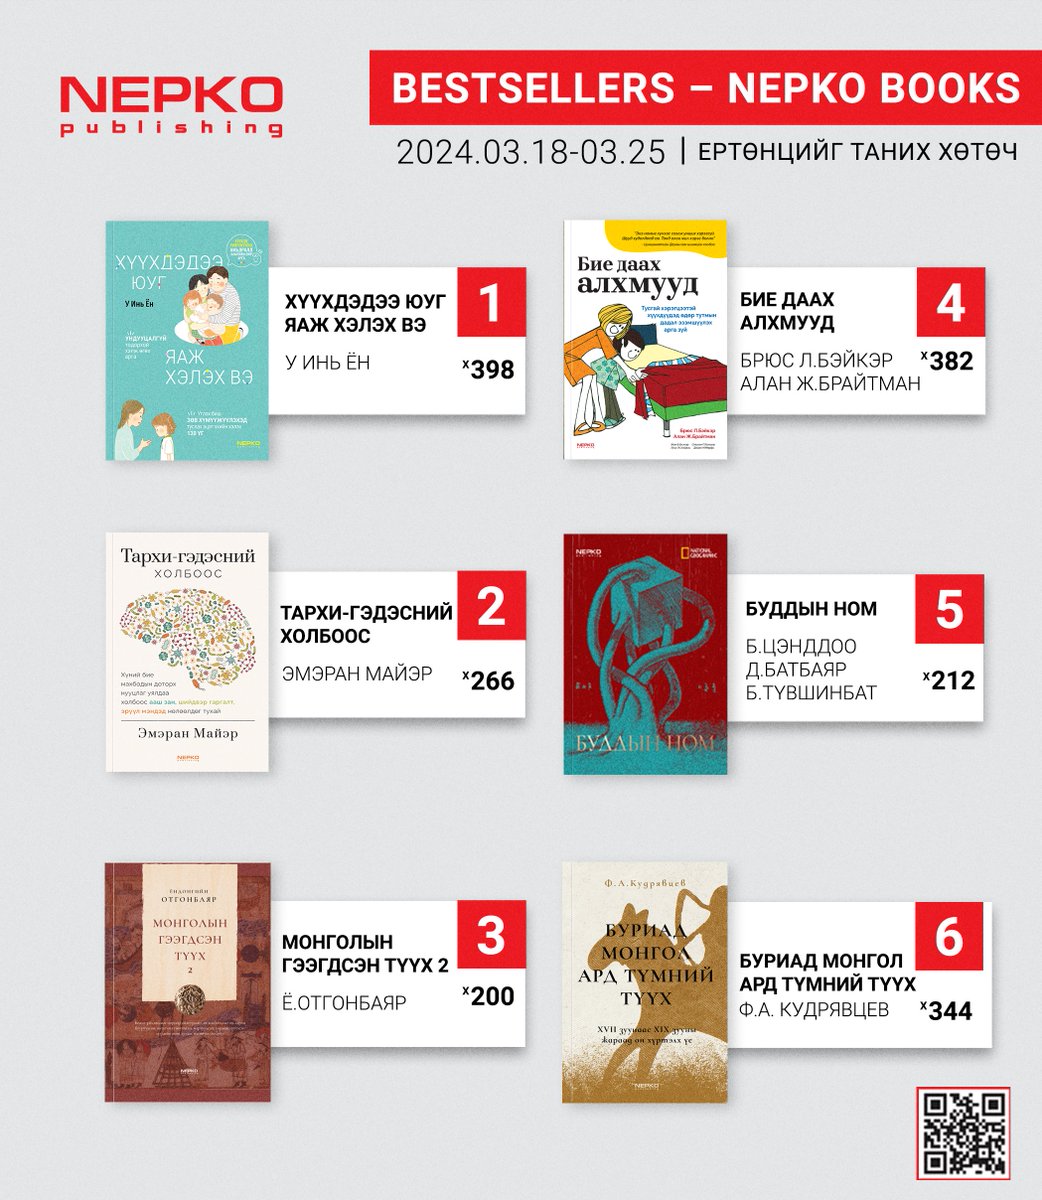 #bestsellerbooks 2024.03.18-03.25-ны хооронд Нэпко нэрийн дэлгүүр болон nepko.mn сайтыг захиалга, борлуулалтаараа тэргүүлсэн 6 номыг танилцуулж байна. Онлайн захиалга: nepko.mn Захиалах утас: 7533-9933 #nepko_books